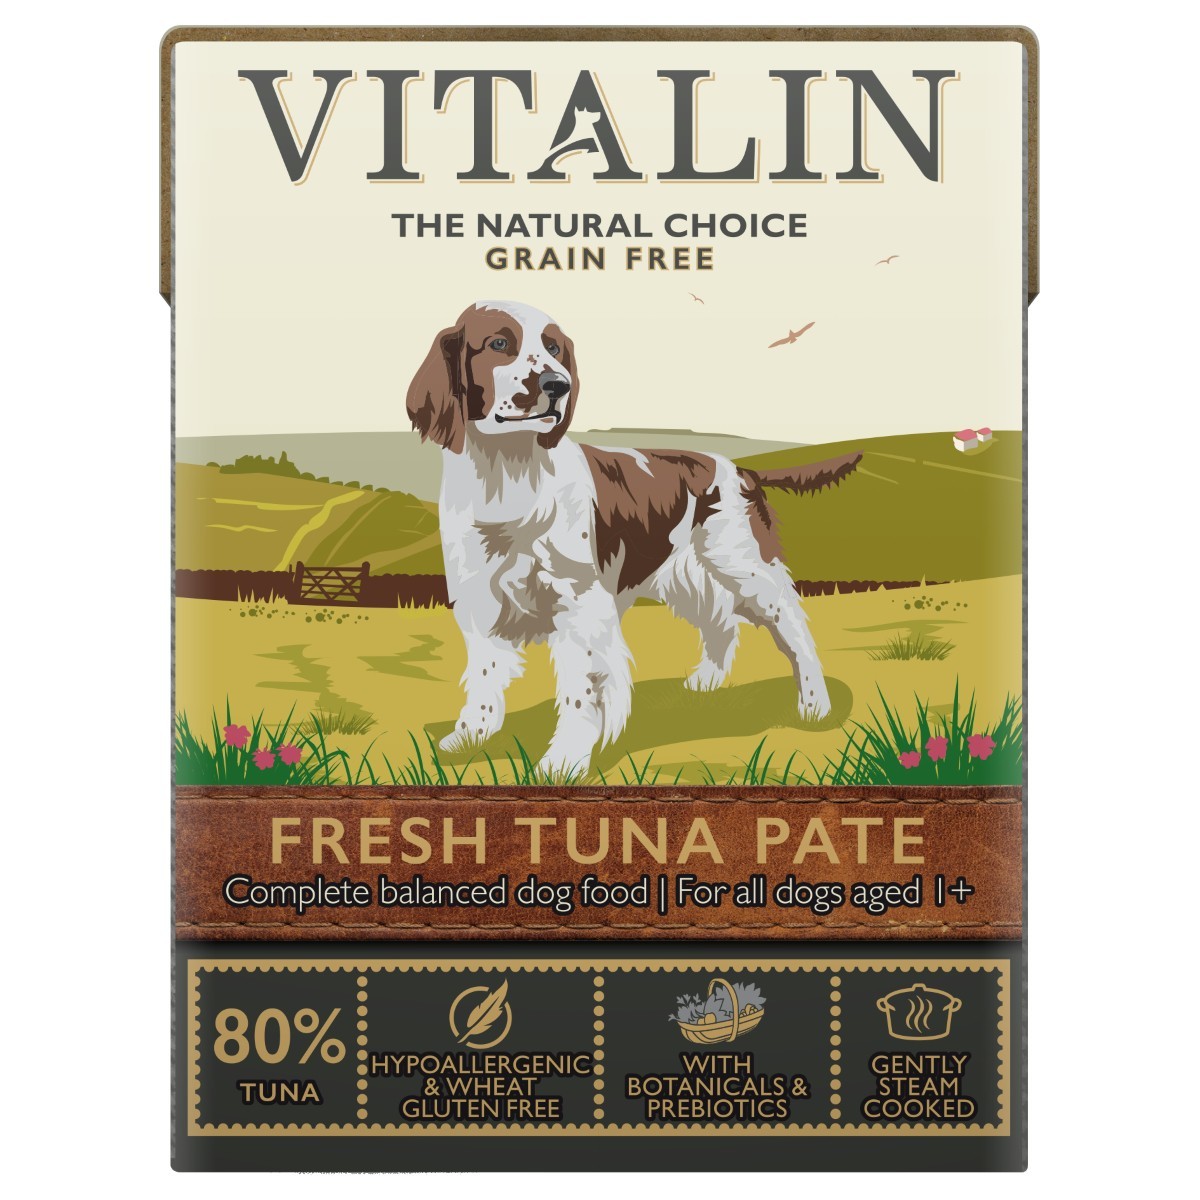 vitalin dog food